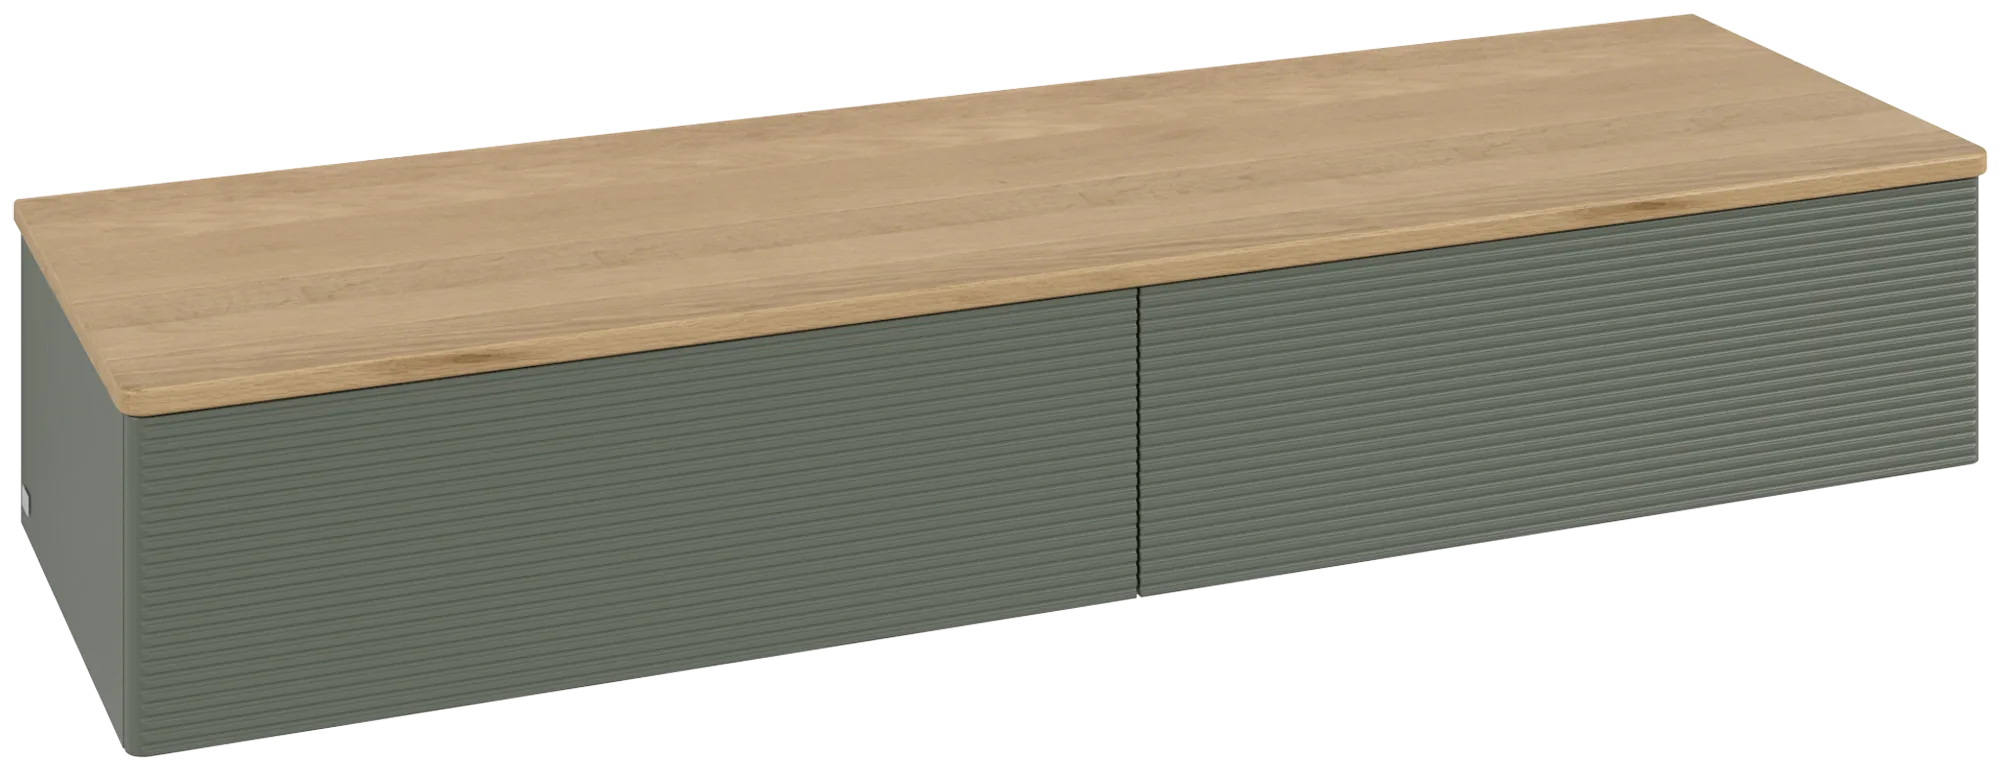 Bild von VILLEROY BOCH Antao Sideboard, 2 Auszüge, 1600 x 268 x 500 mm, Front mit Struktur, Leaf Green Matt Lacquer / Honey Oak #K42101HL